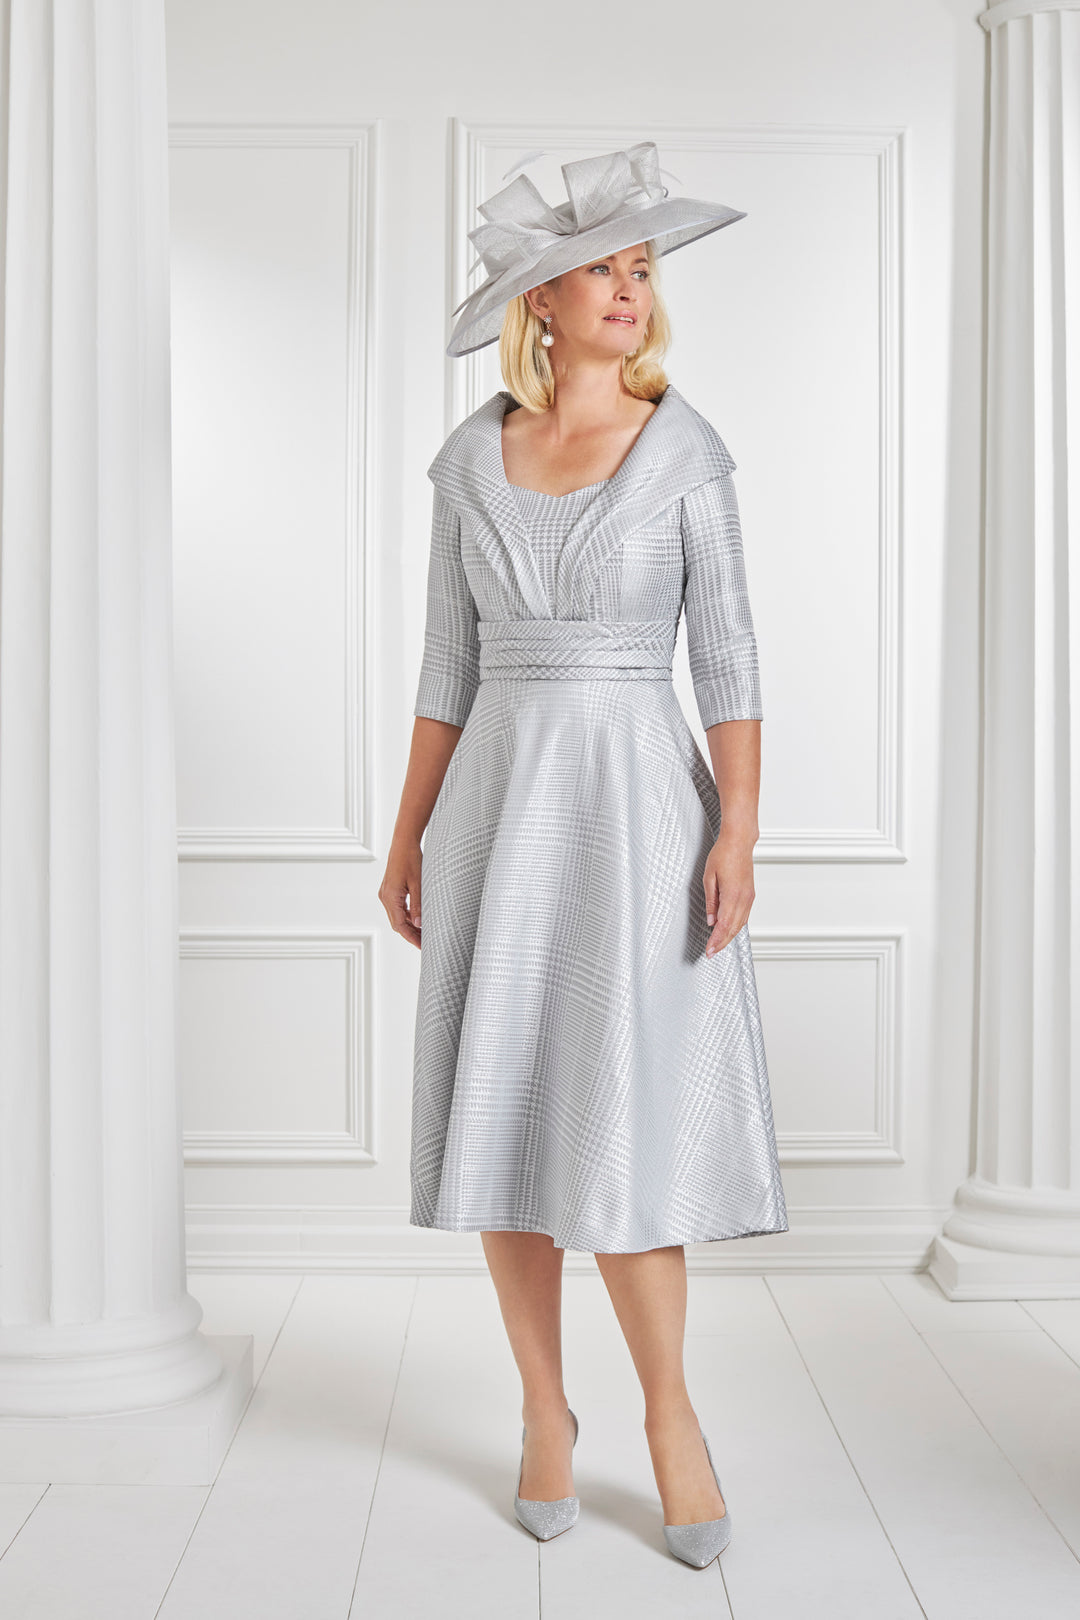 Condici 11386 - Dogtooth silver a-line dress-A-line Dress